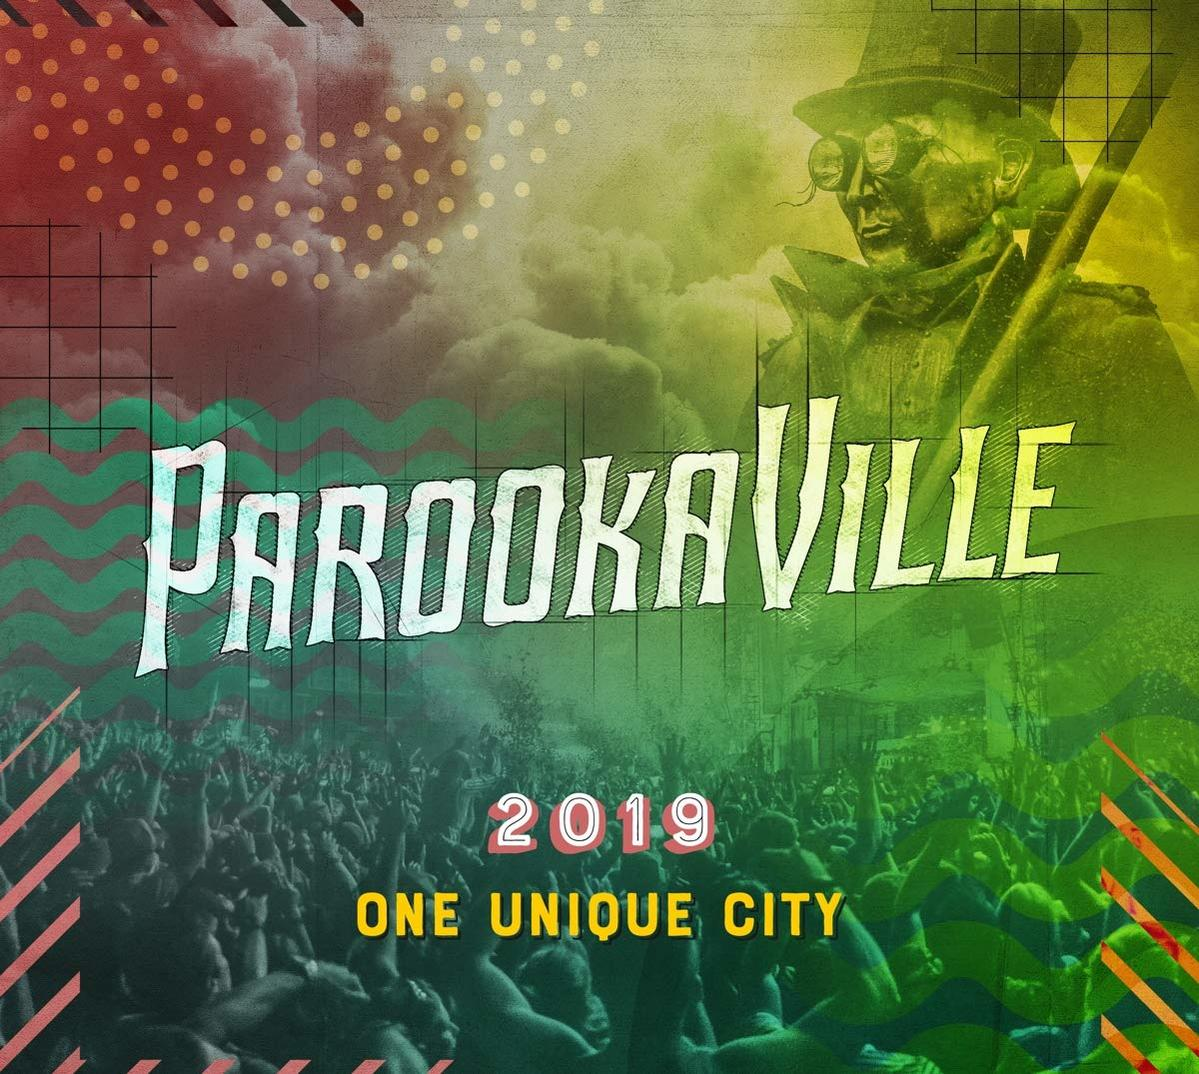 VARIOUS - Parookaville 2019 - (CD)